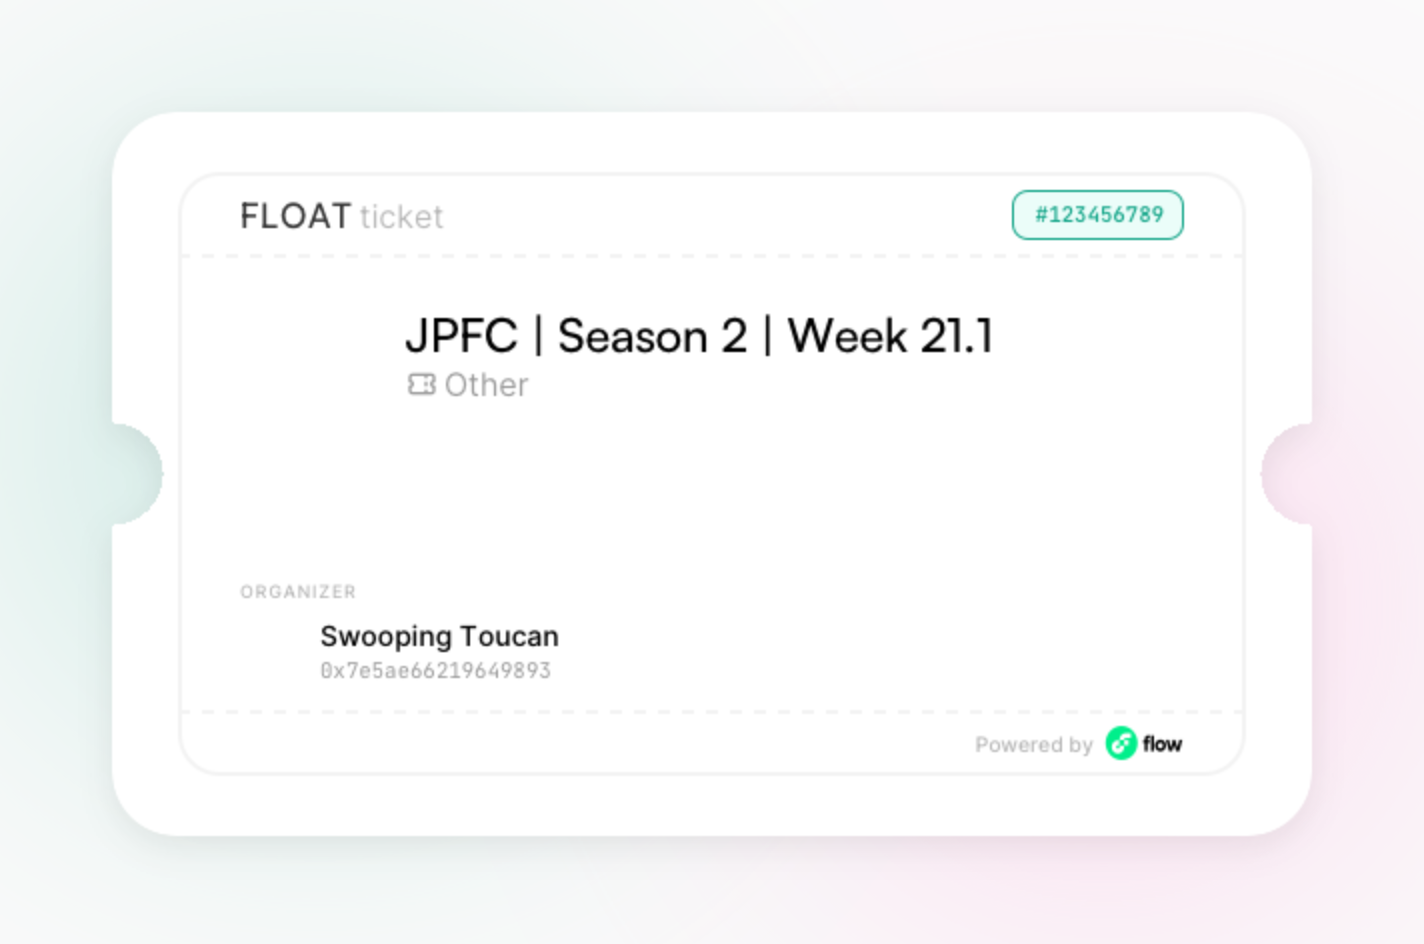 JPFC | Season 2 | Week 21.1 asset